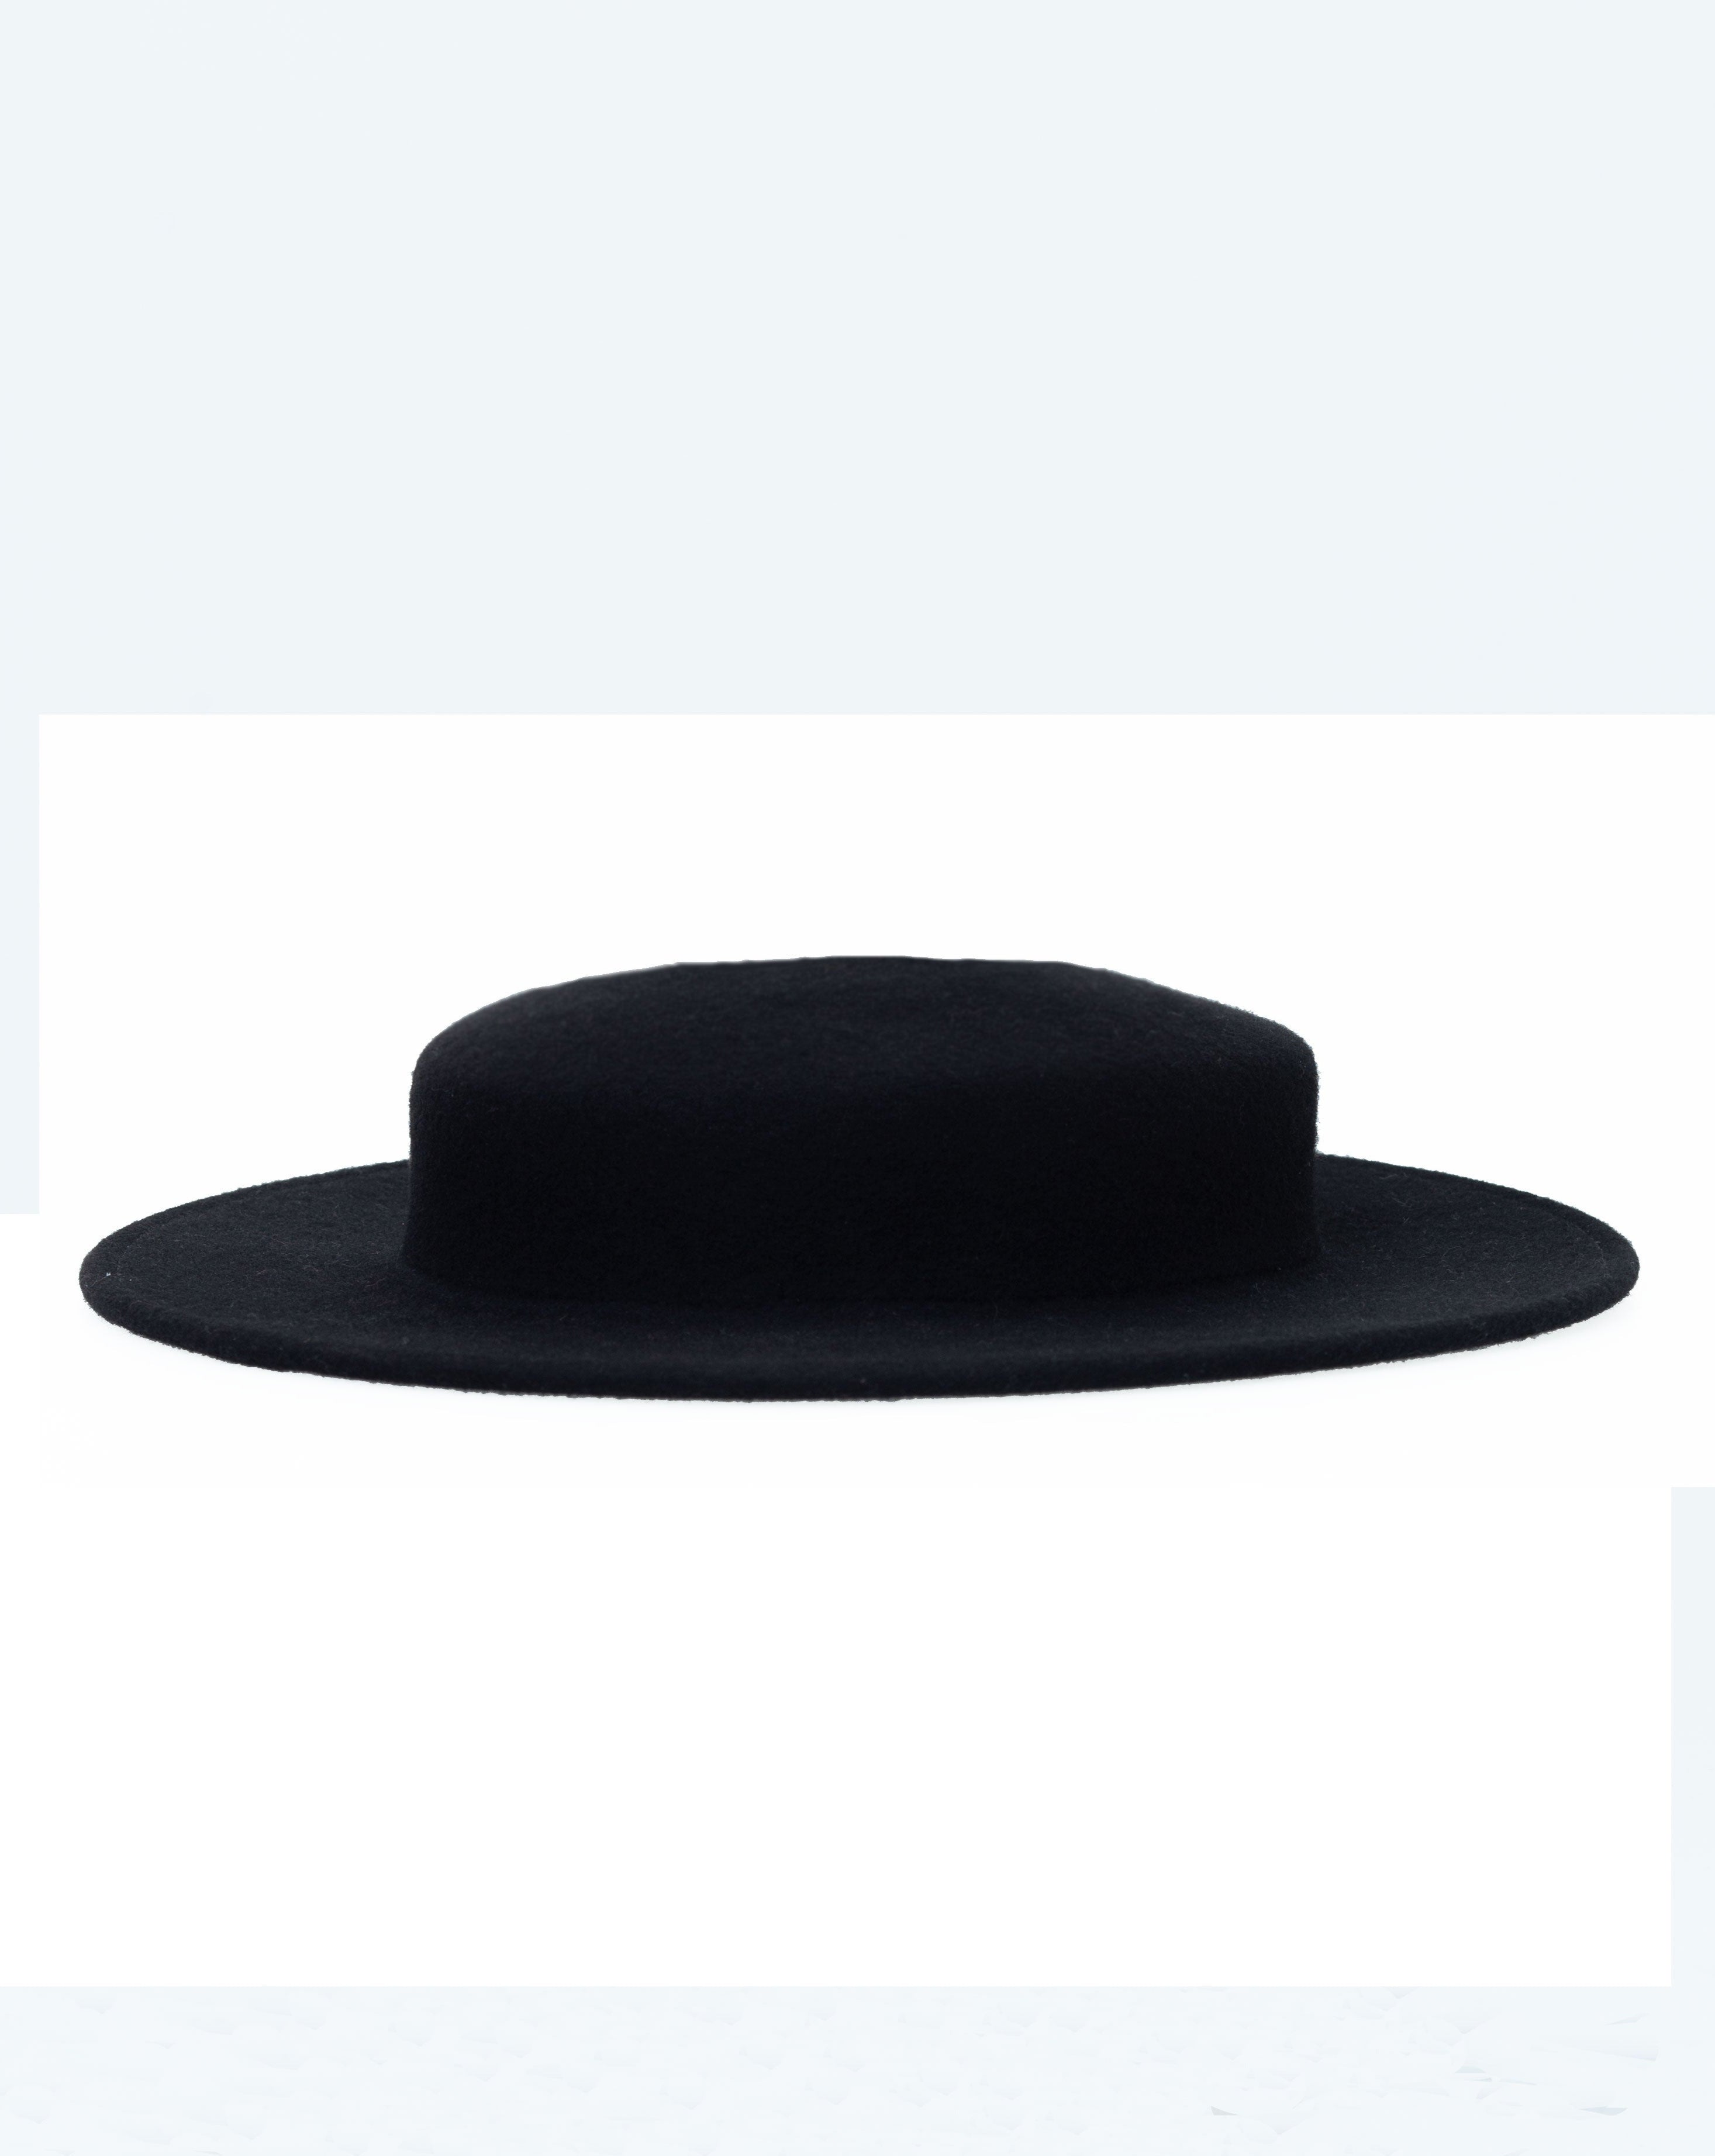 Krystyna Boater Hat in Black Wool Felt